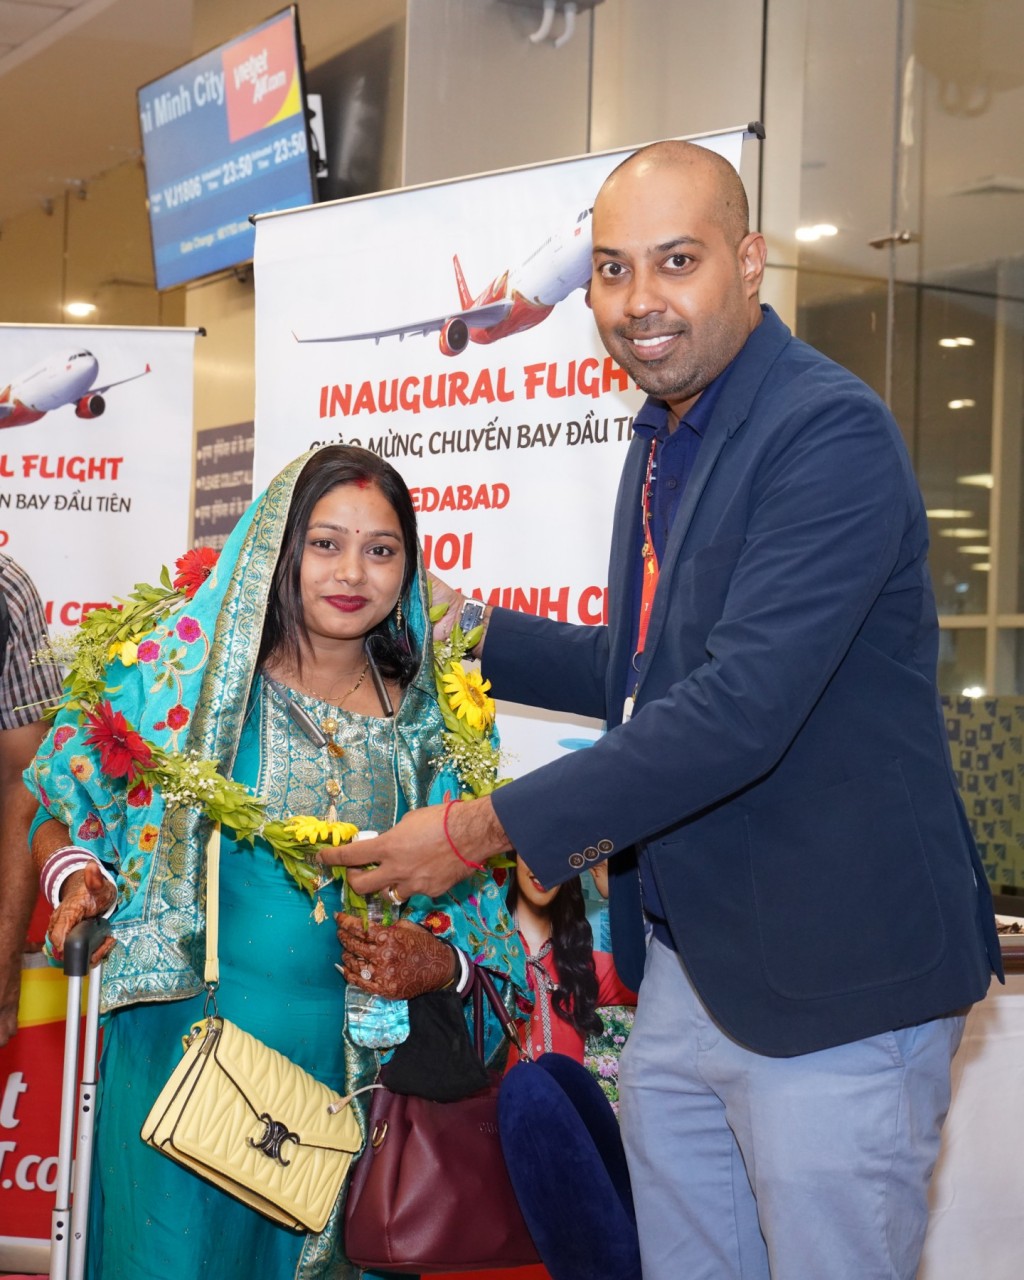 Đại diện Vietjet tặng hoa và chào đón hành khách trên chuyến bay đầu tiên từ Ahmedabad đến TP.HCM